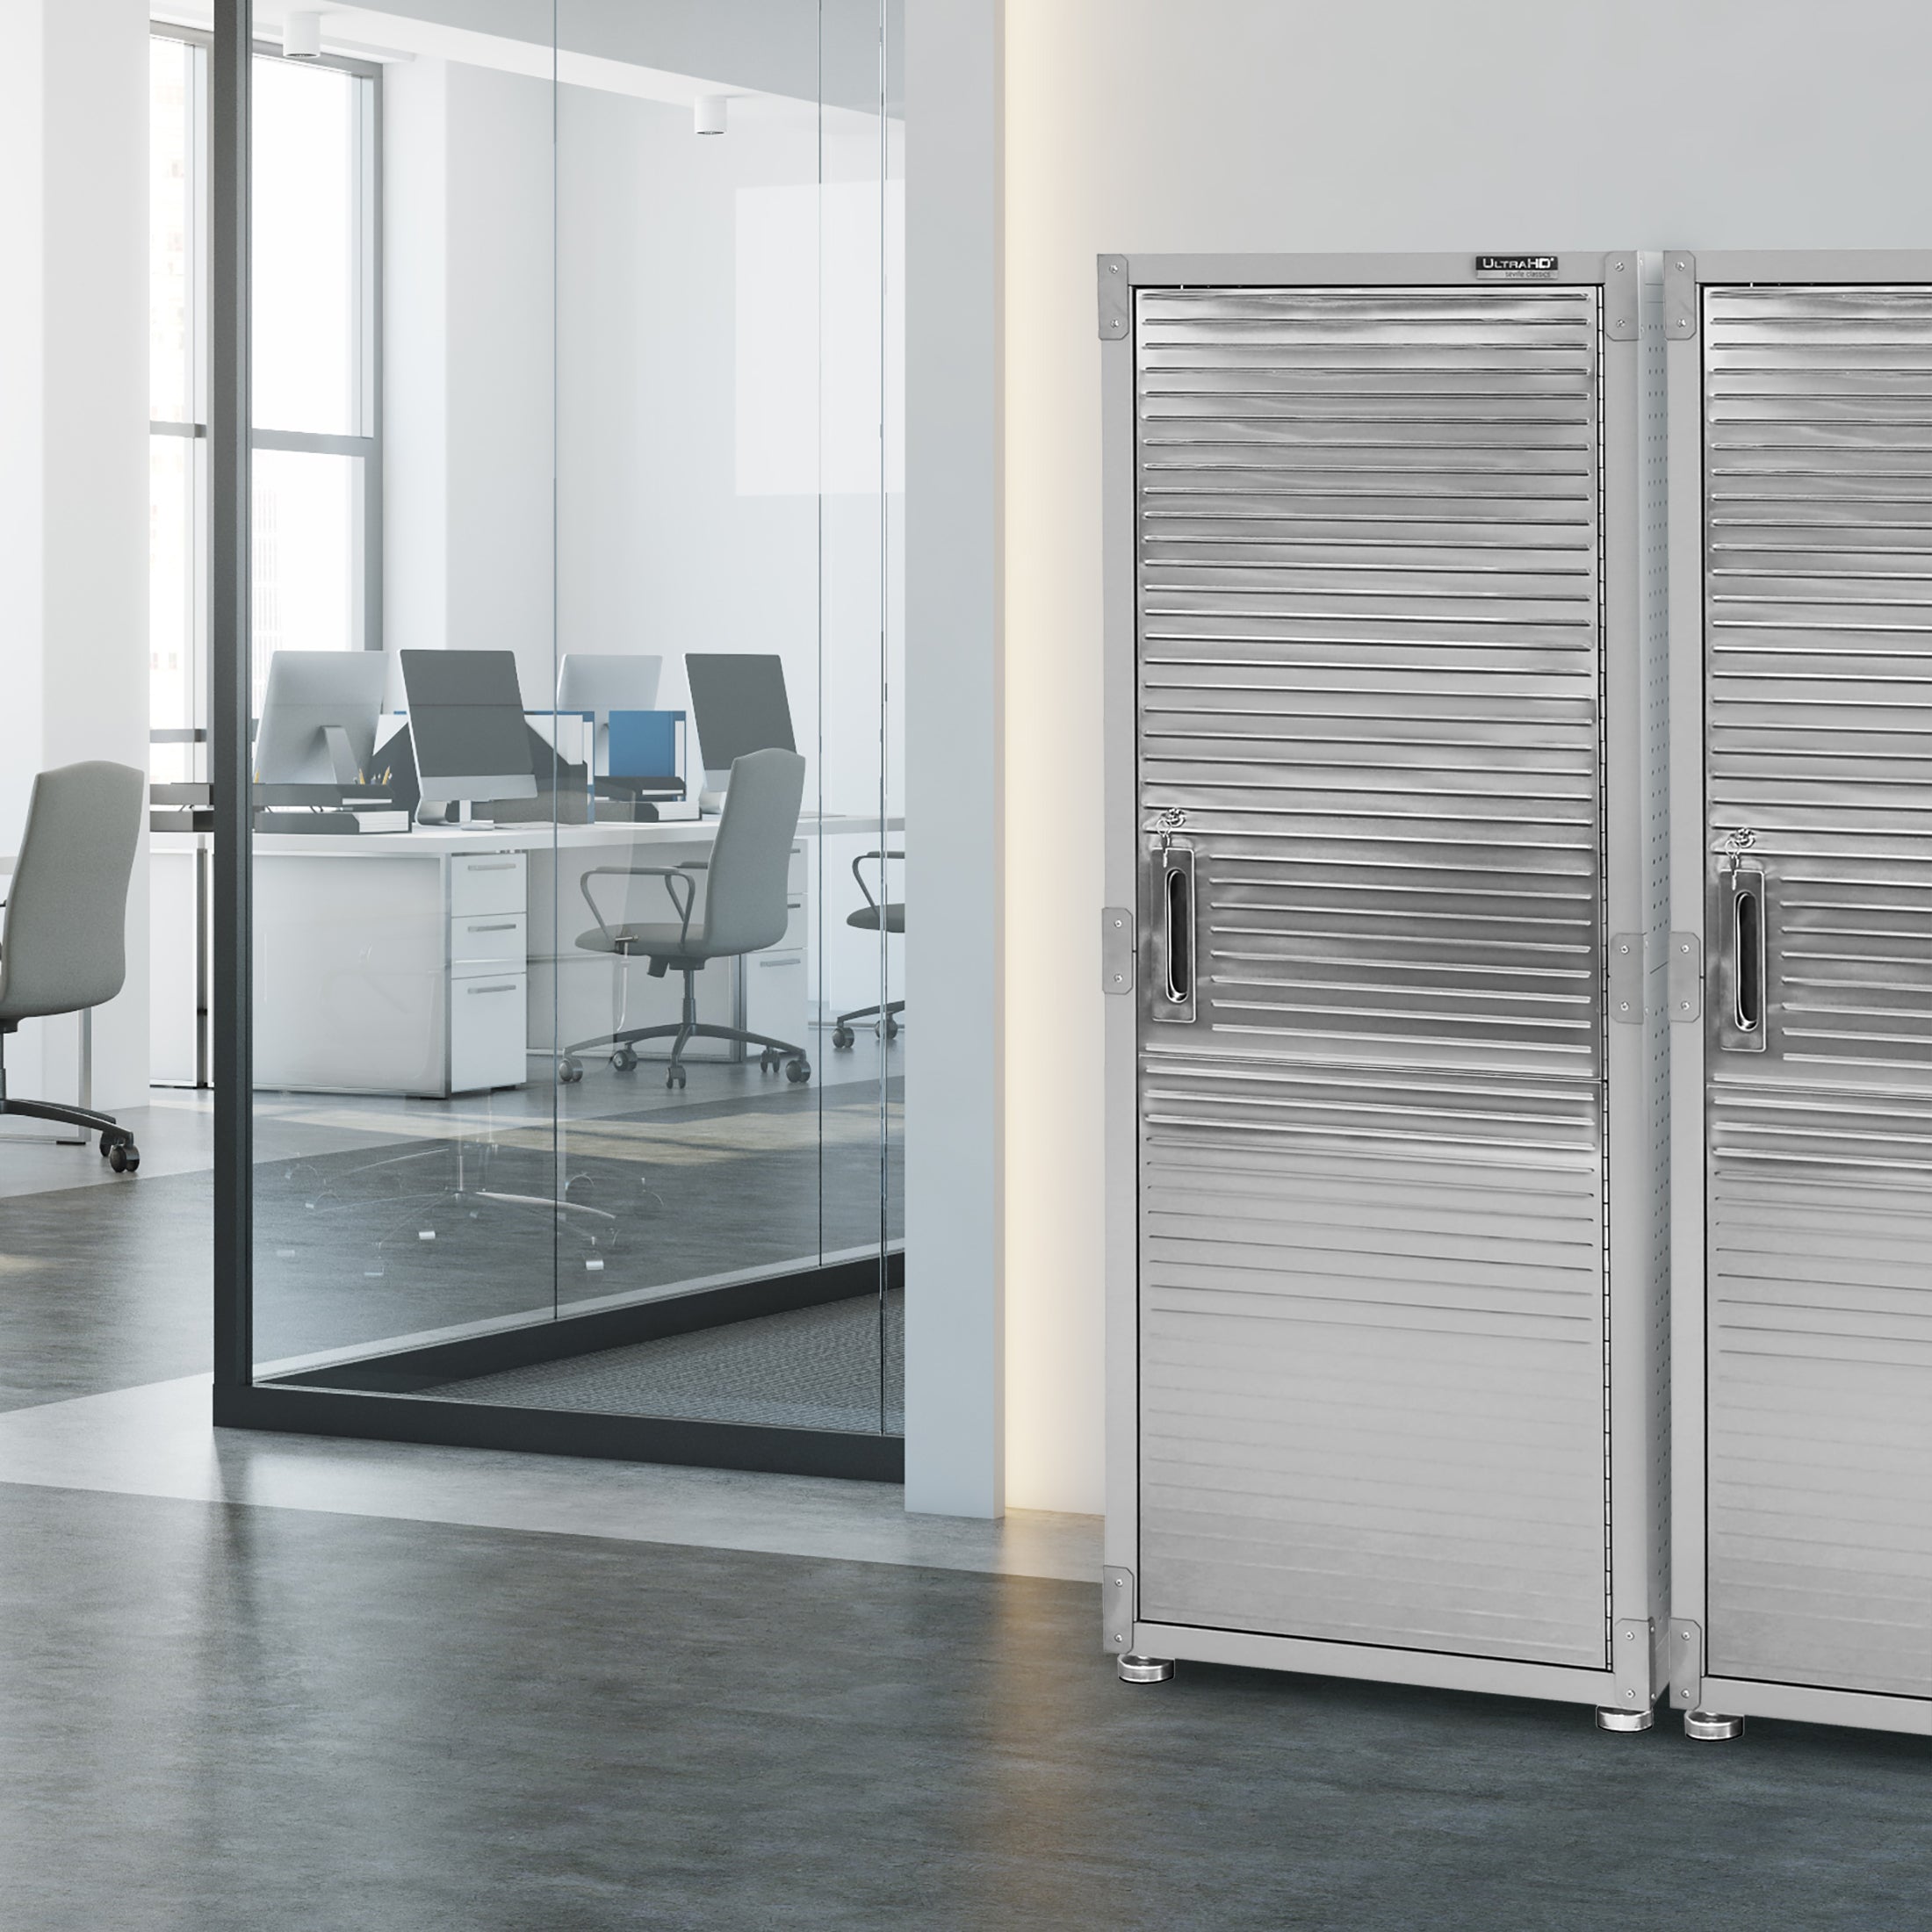 Quantum Storage Heavy-Duty Cabinet — 36in.W x 24in.D x 72in.H, No Bins, 4  Interior Shelves, 12 Door Shelves, Model# QSC-36-41S-12DSQSC-36-41S-12DS